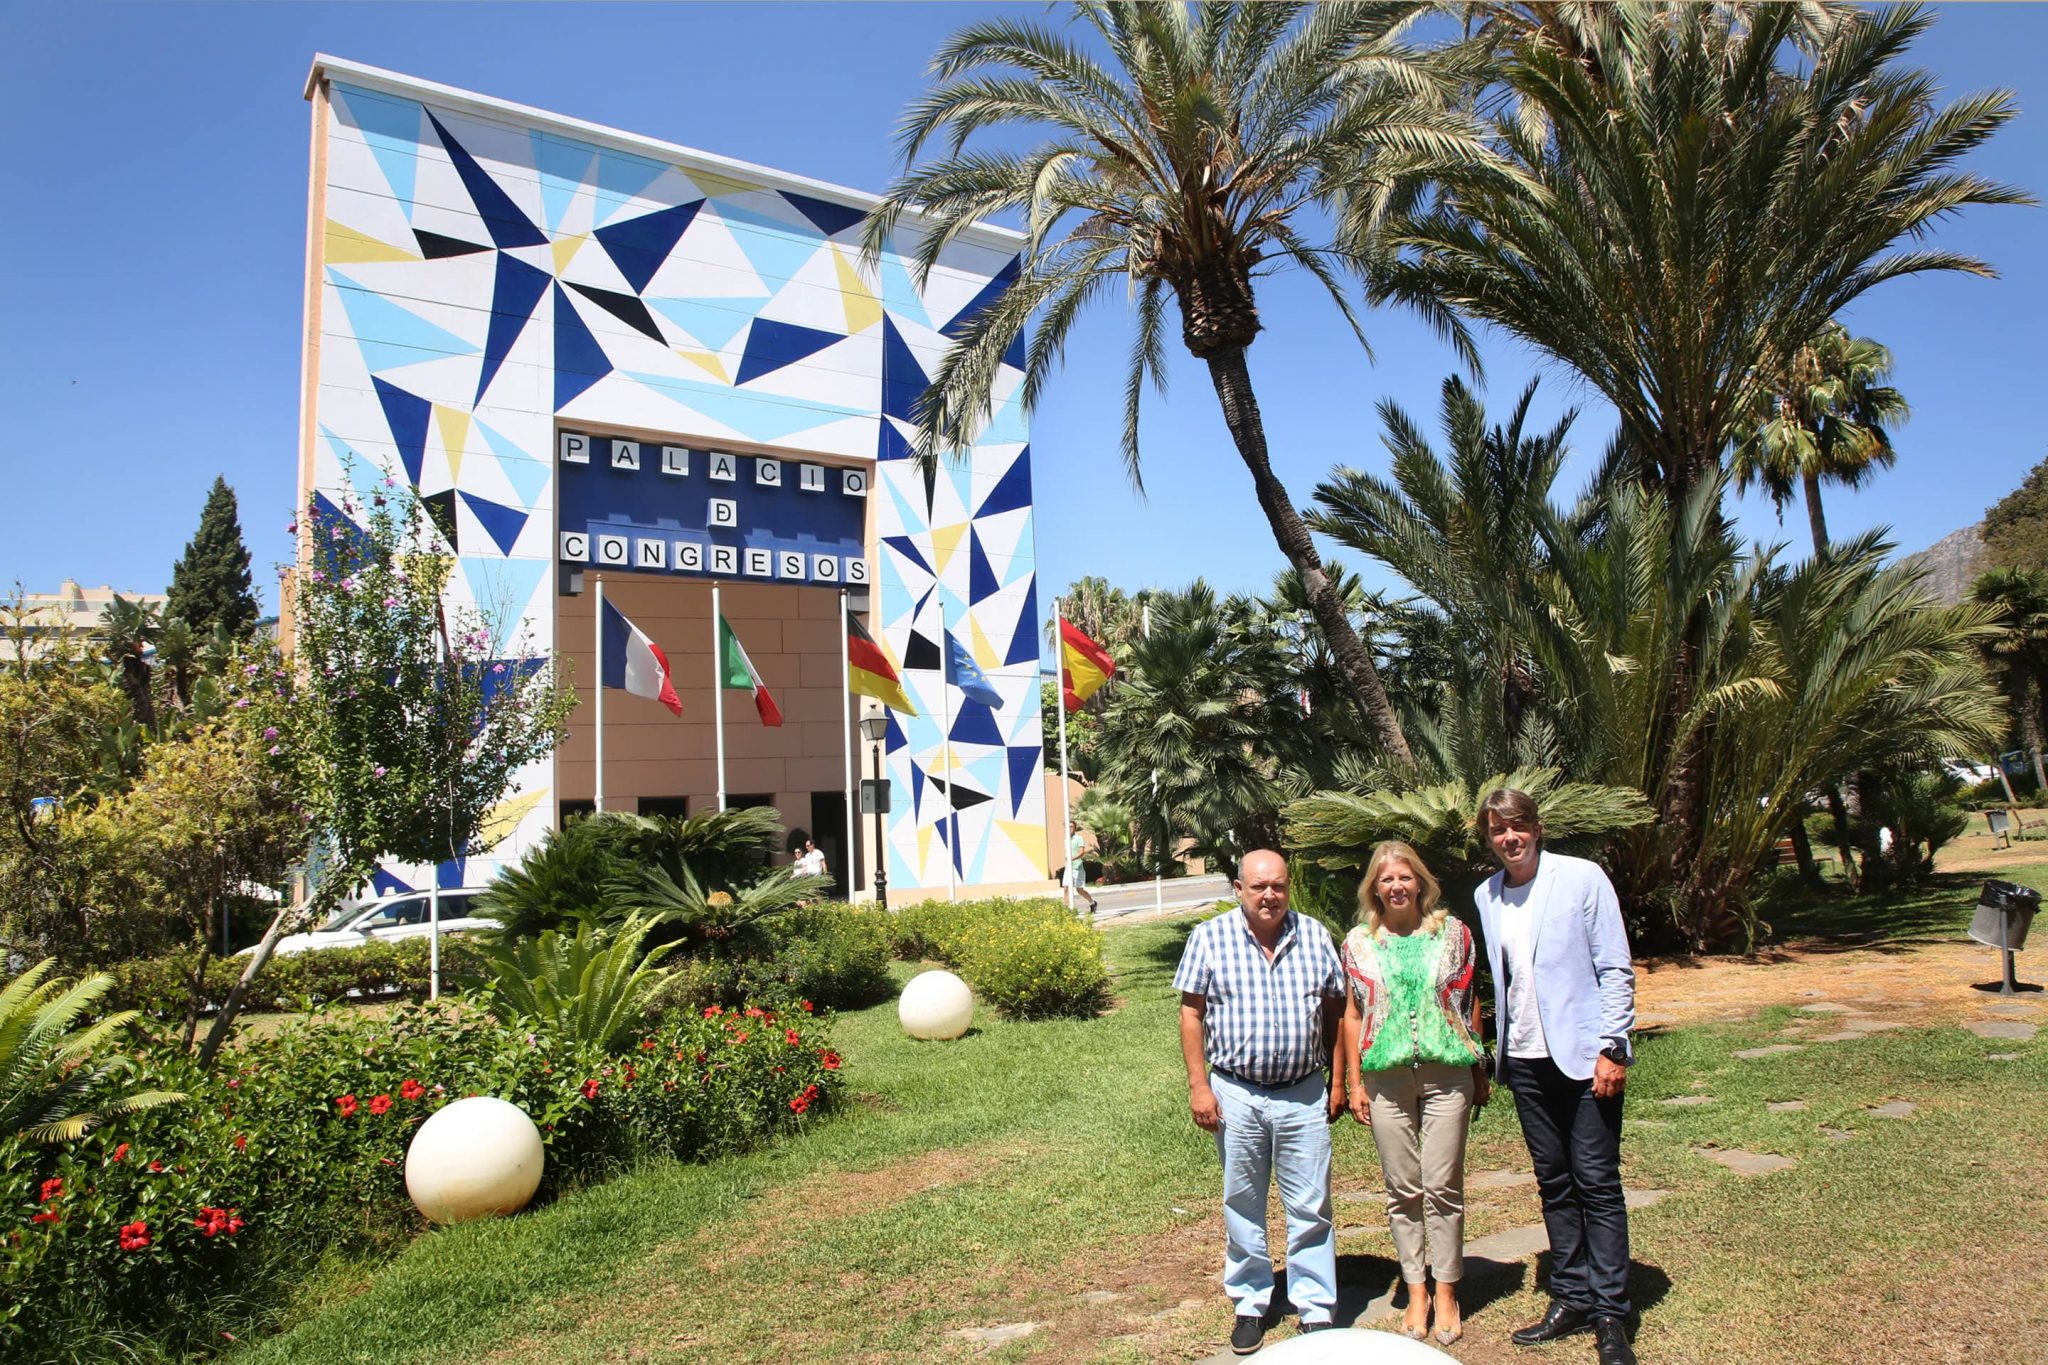 El artista Curro Leyton pinta la fachada del Palacio de Congresos de Marbella